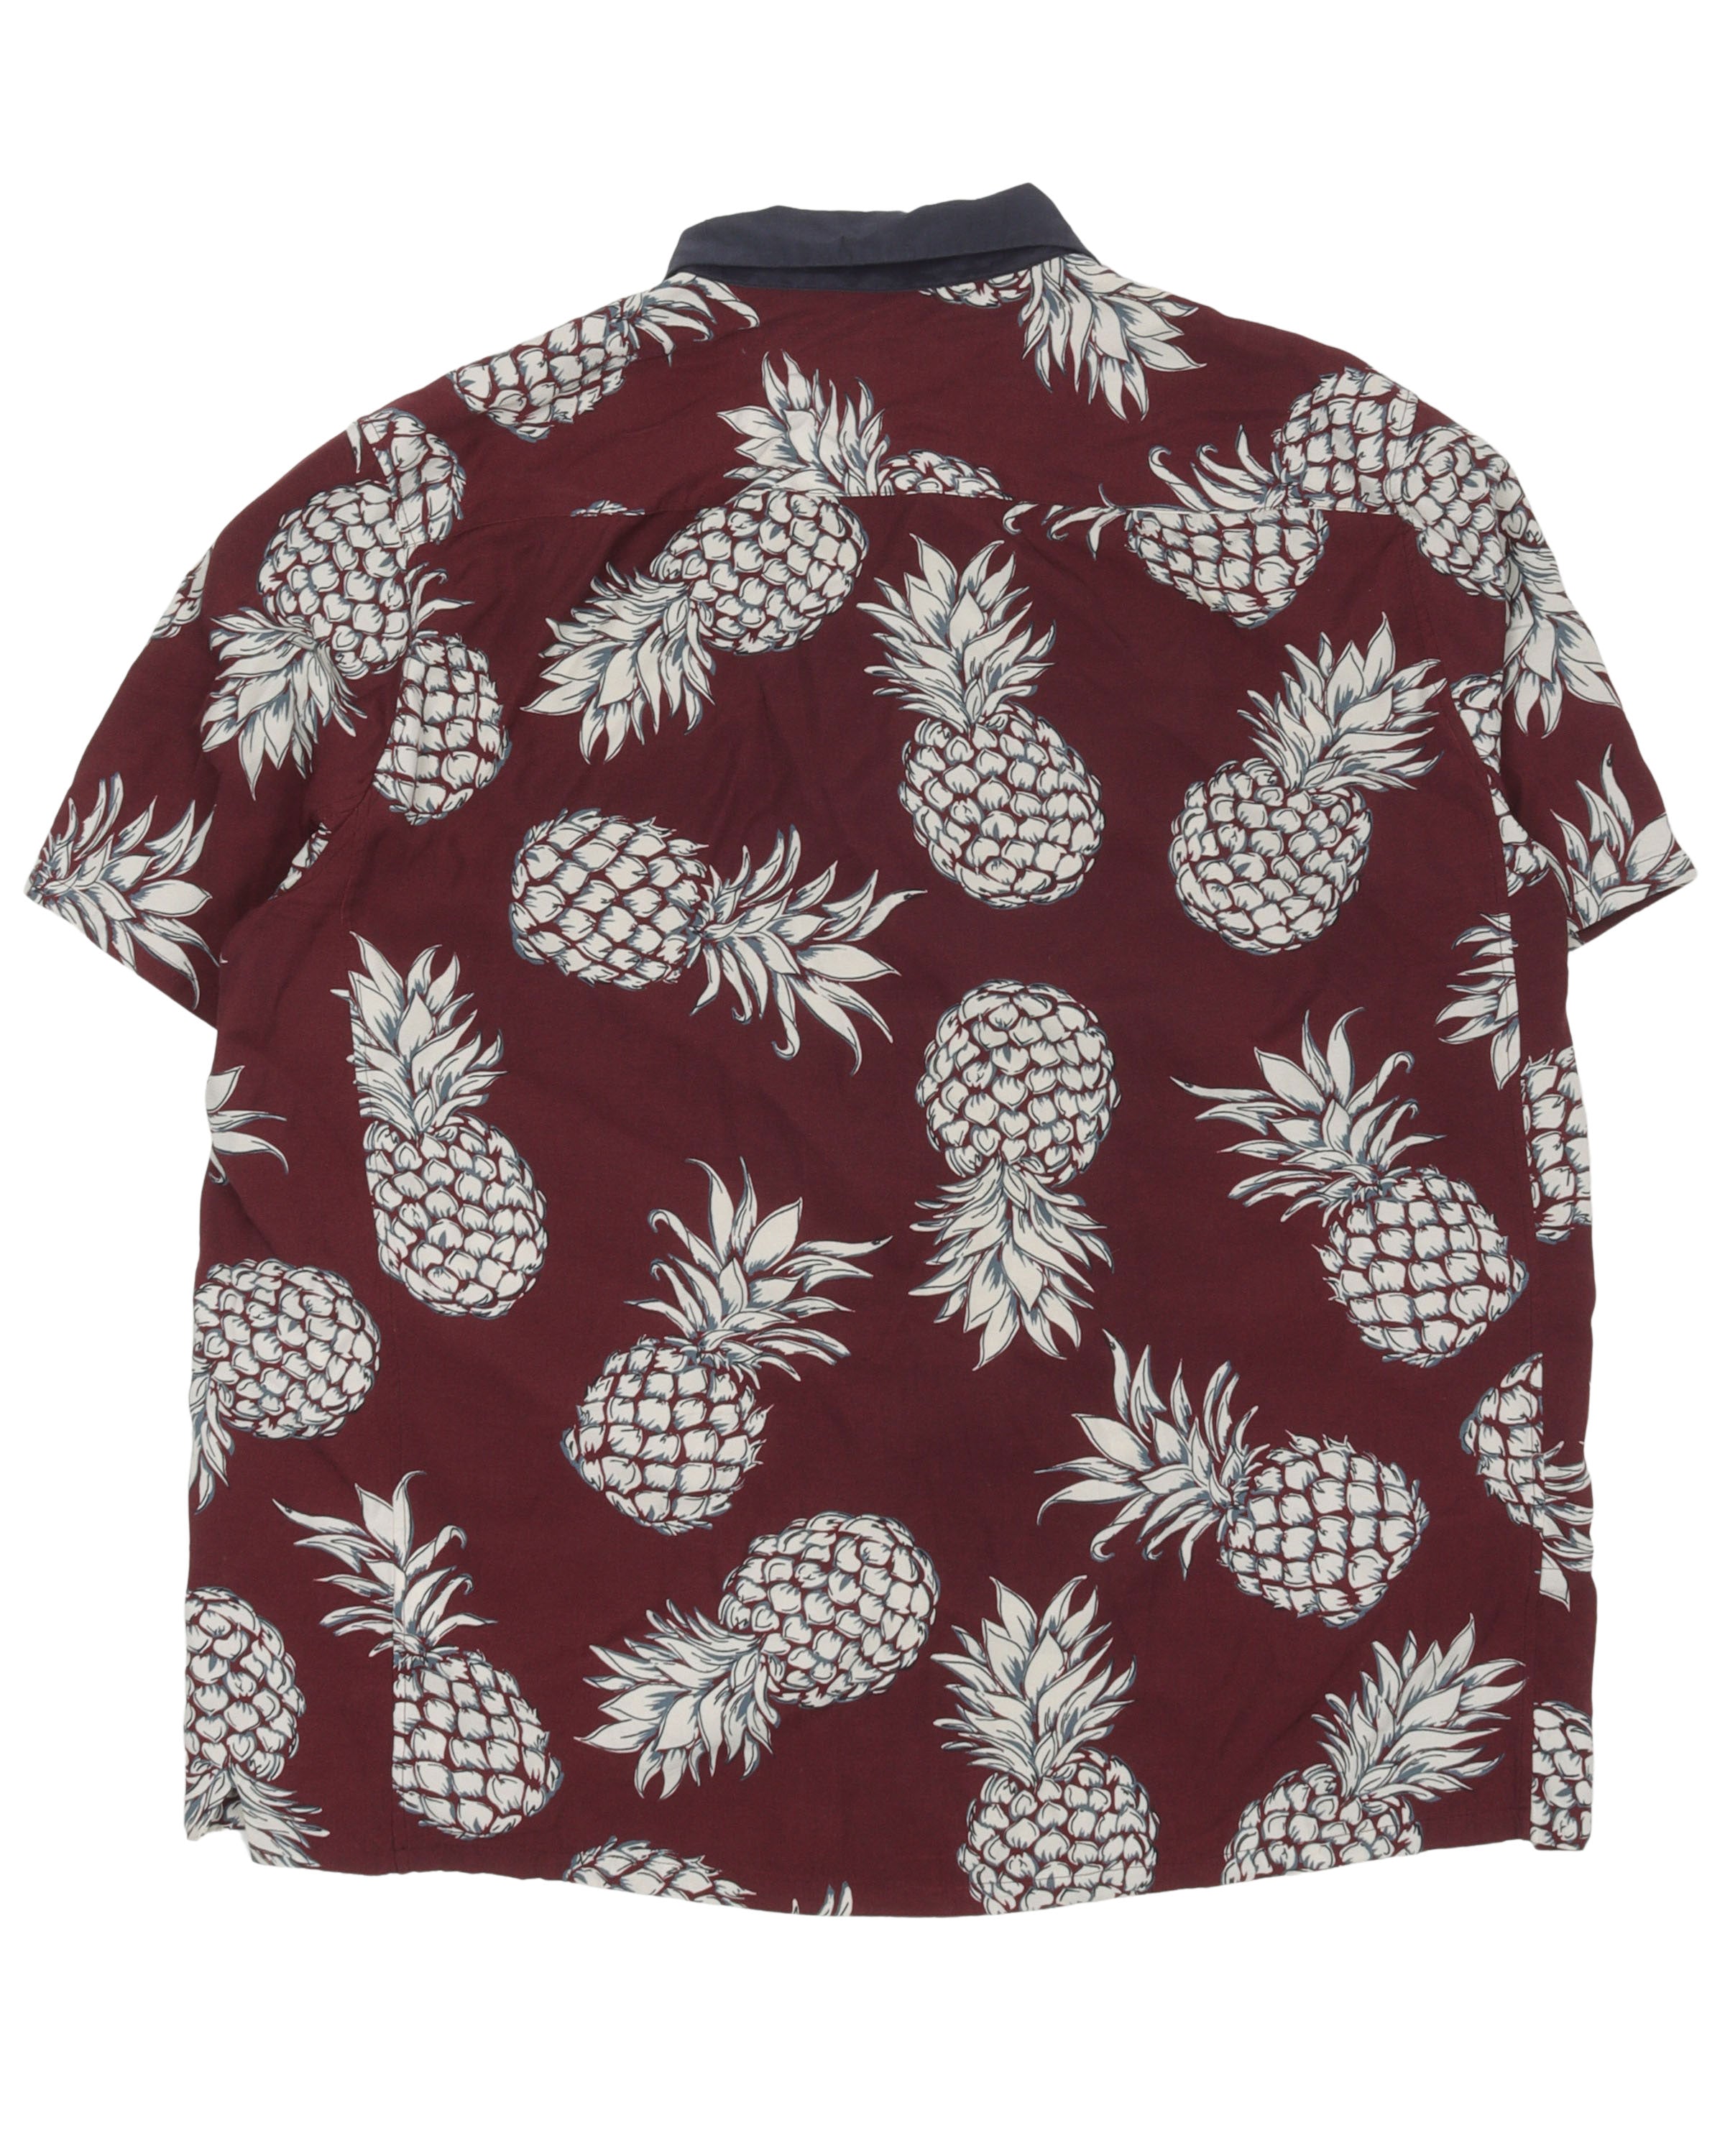 Pineapple Shirt